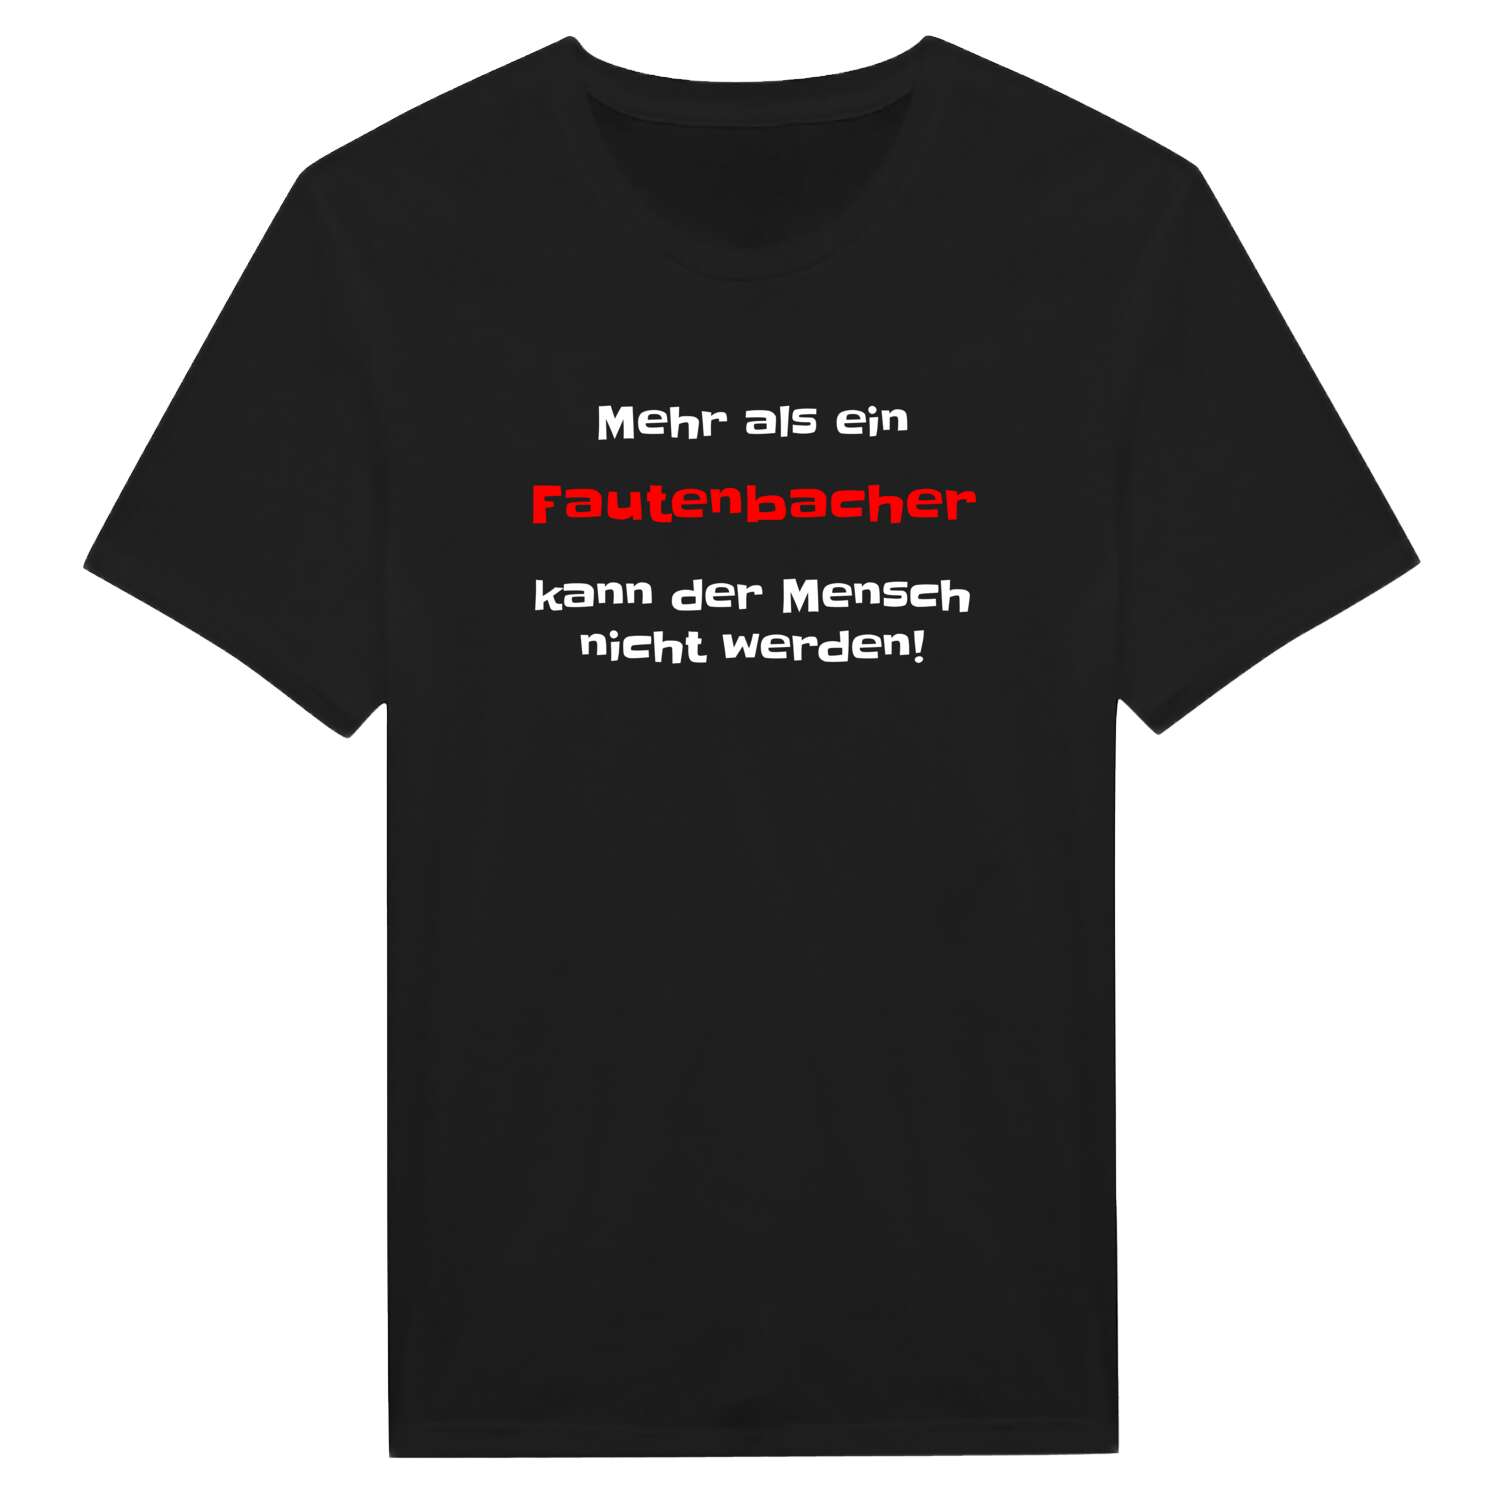 Fautenbach T-Shirt »Mehr als ein«